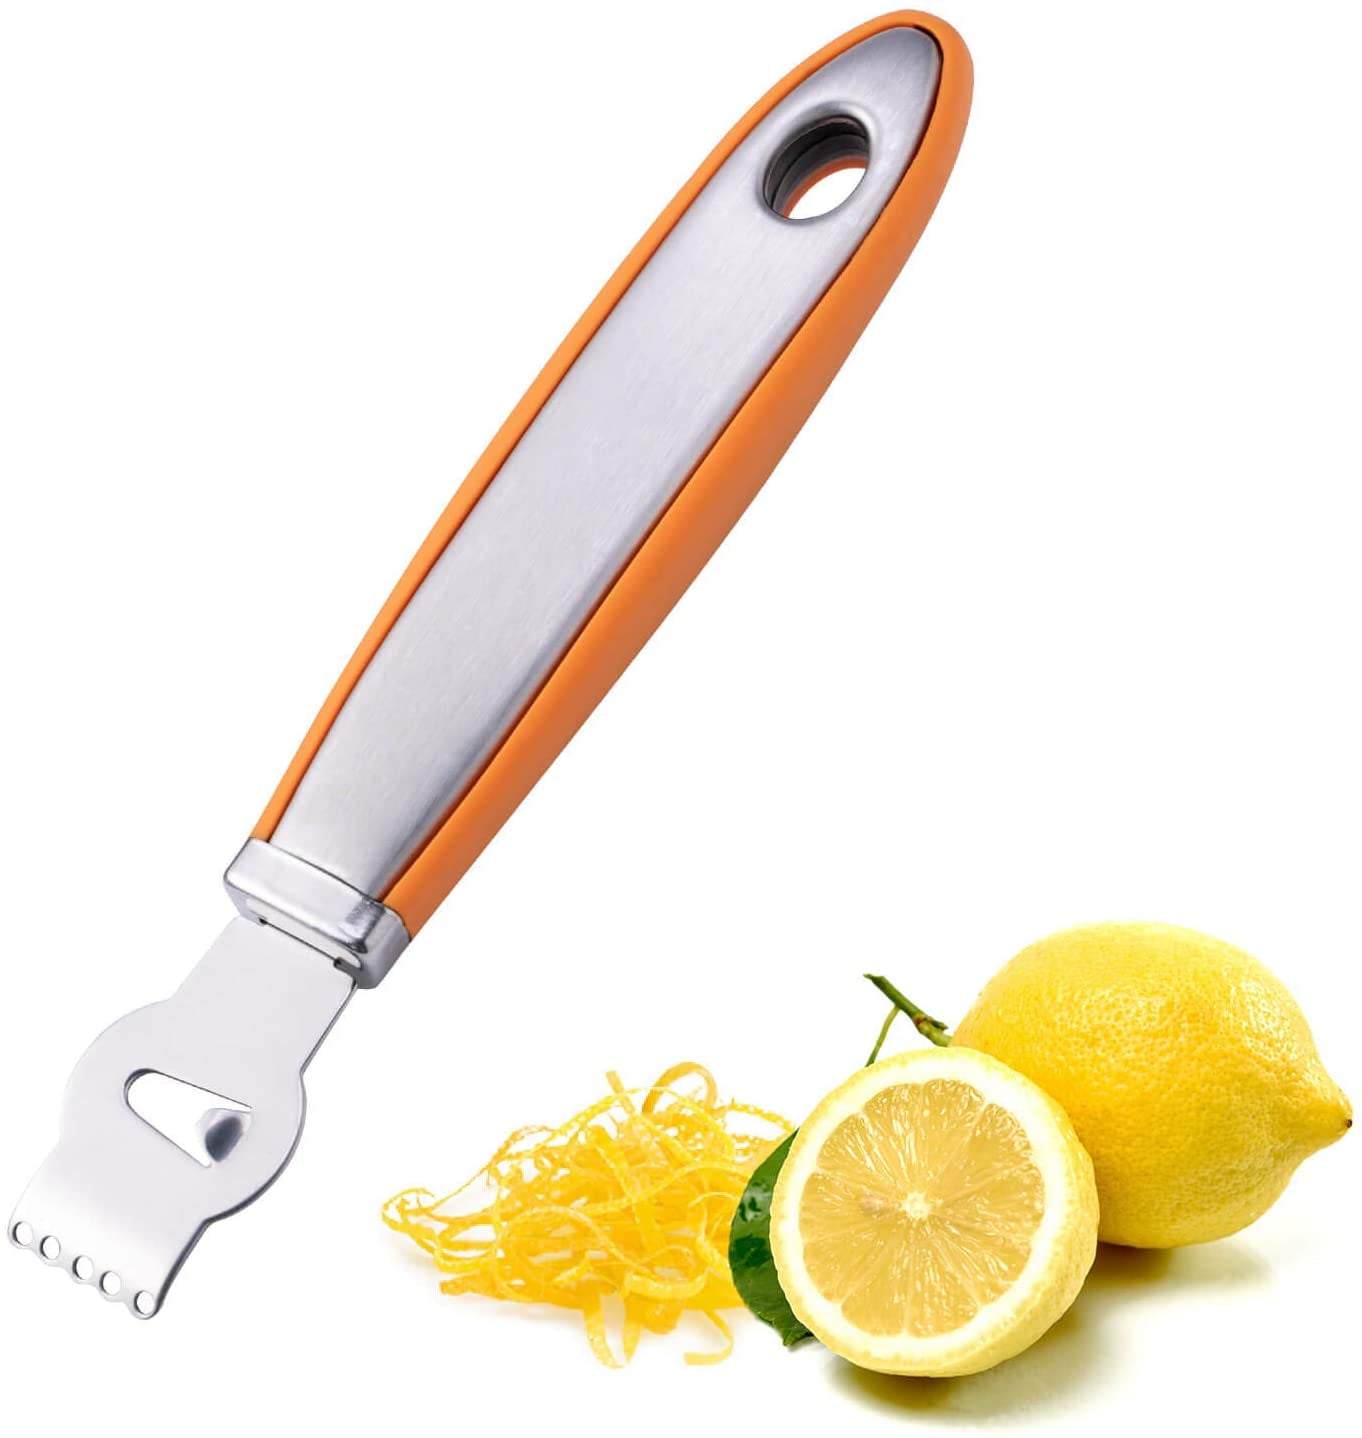 Stainless Steel Peeler Non Slip Grip Citrus Fruit Peeler Lemon Lime Orange Peeler Zester Professional Kitchen Peeling Tool Dishwasher Safe 